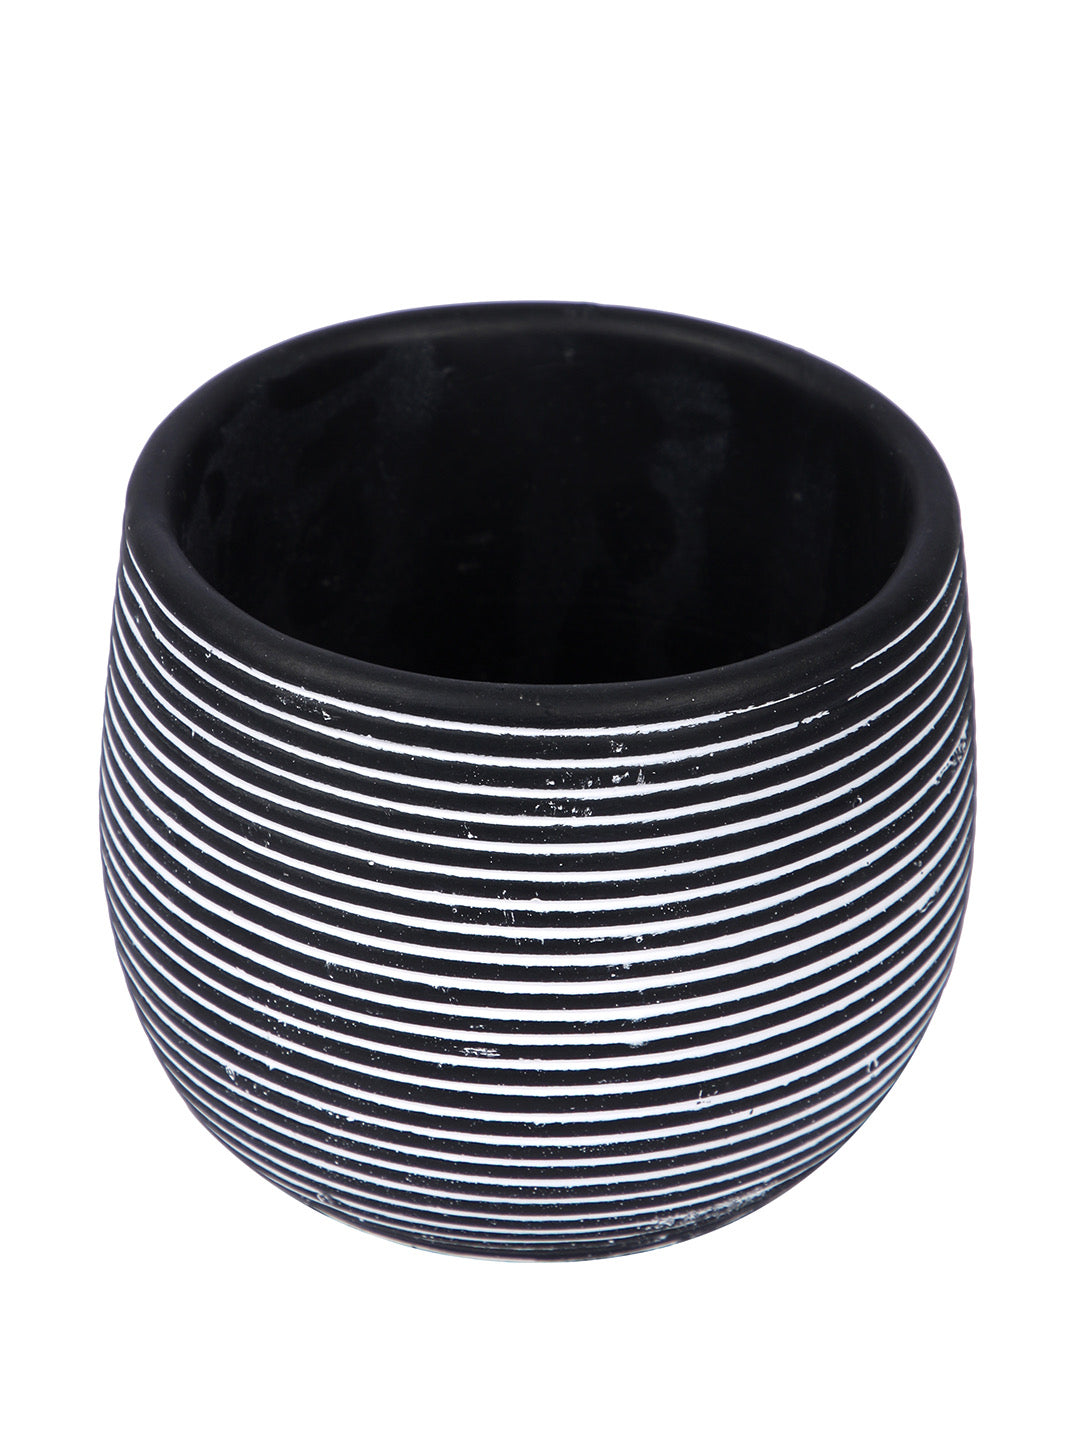 Spiral Design Ceramic Black Planter - Default Title (CHC22337BL)